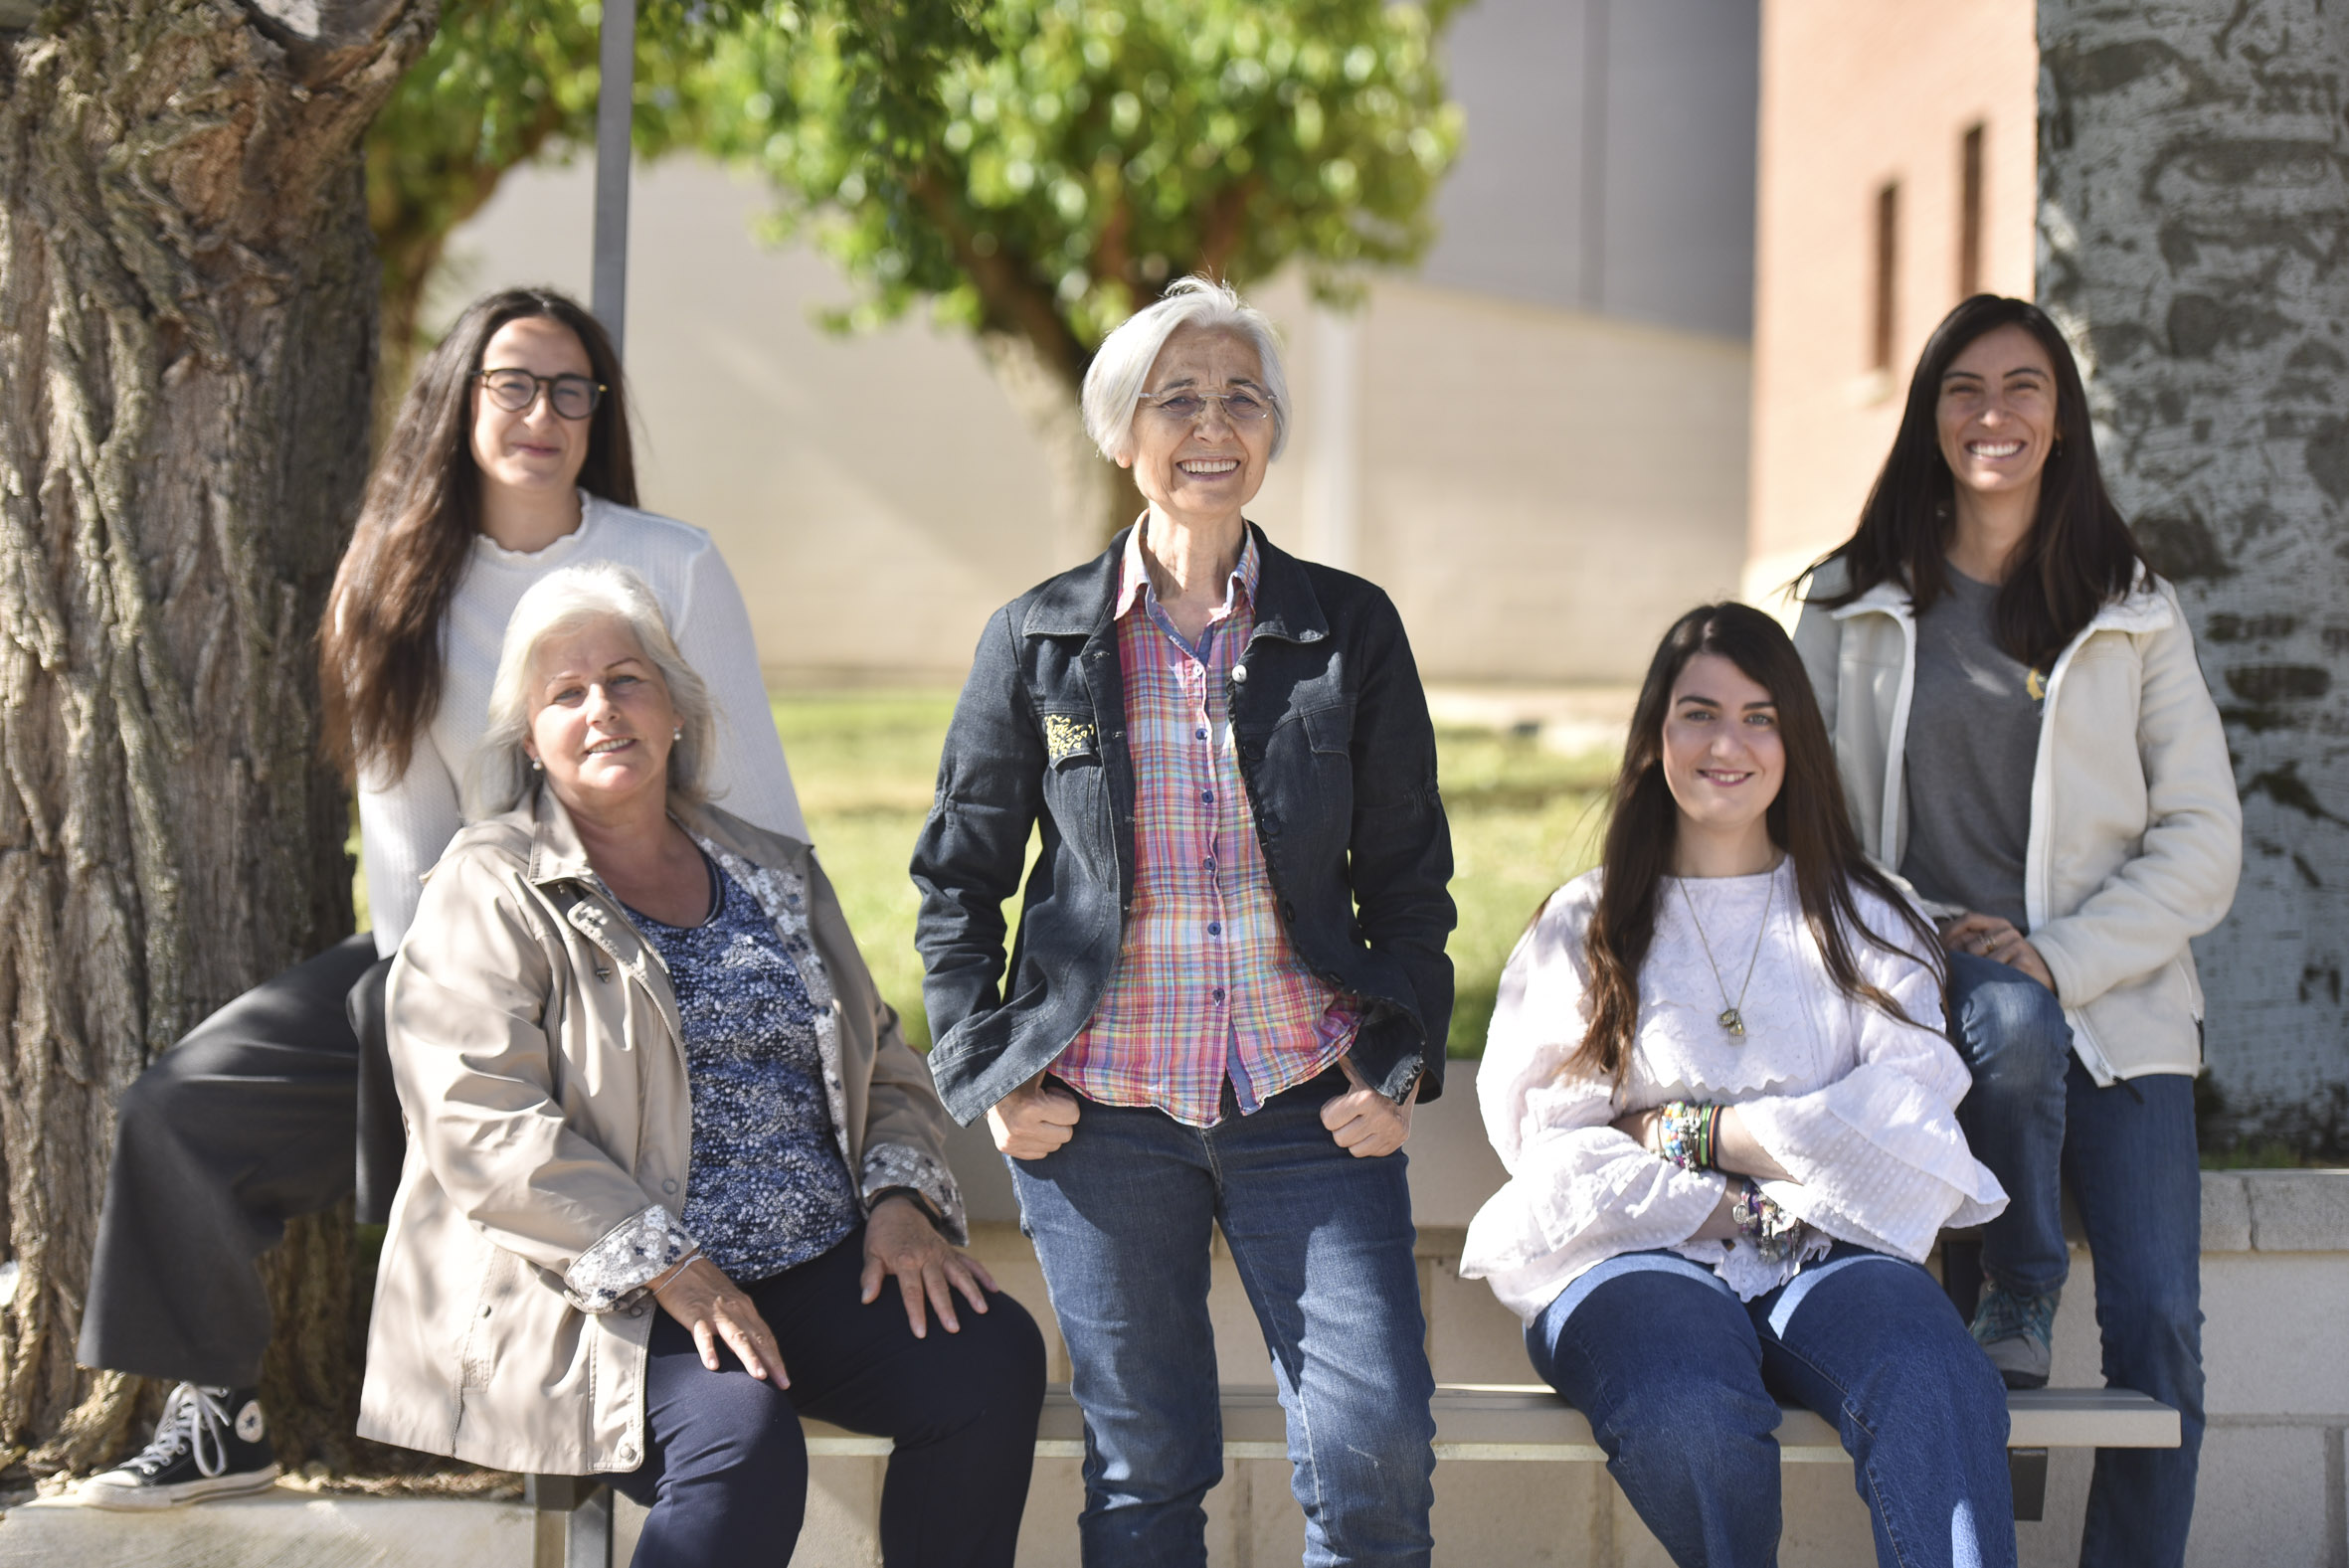 De izquierda a derecha, Ana Bernardos Ballestín, María Jesús Agustín, Herminia Ballestín, Adela Alfaro y Mariella Araujo Velloso, cinco de las siete integrantes de la agrupación Mujeres por el Municipio de Angüés, el miércoles en la localidad oscense.